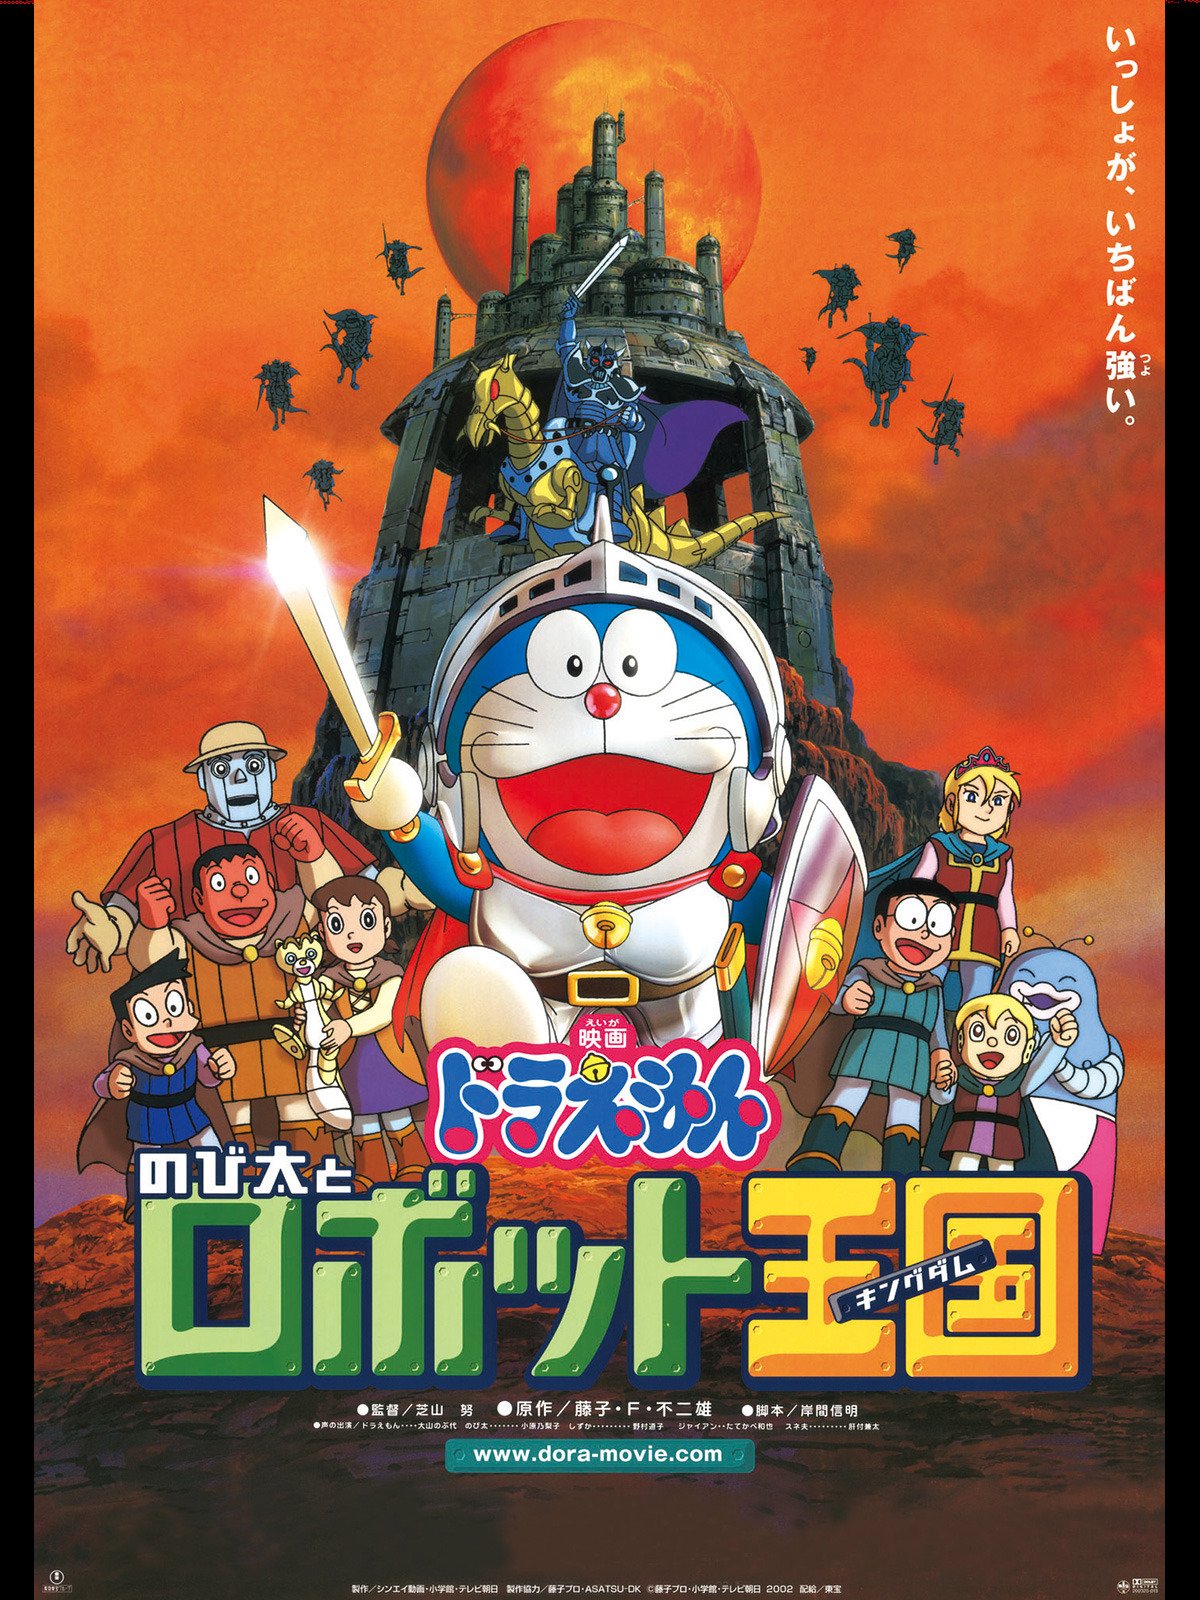 ดูหนังออนไลน์ฟรี Doraemon The Movie Nobita and the Robot Kingdom (2002) โดราเอมอน ตอน โนบิตะ ตะลุยอาณาจักรหุ่นยนต์ หนังเต็มเรื่อง หนังมาสเตอร์ ดูหนังHD ดูหนังออนไลน์ ดูหนังใหม่